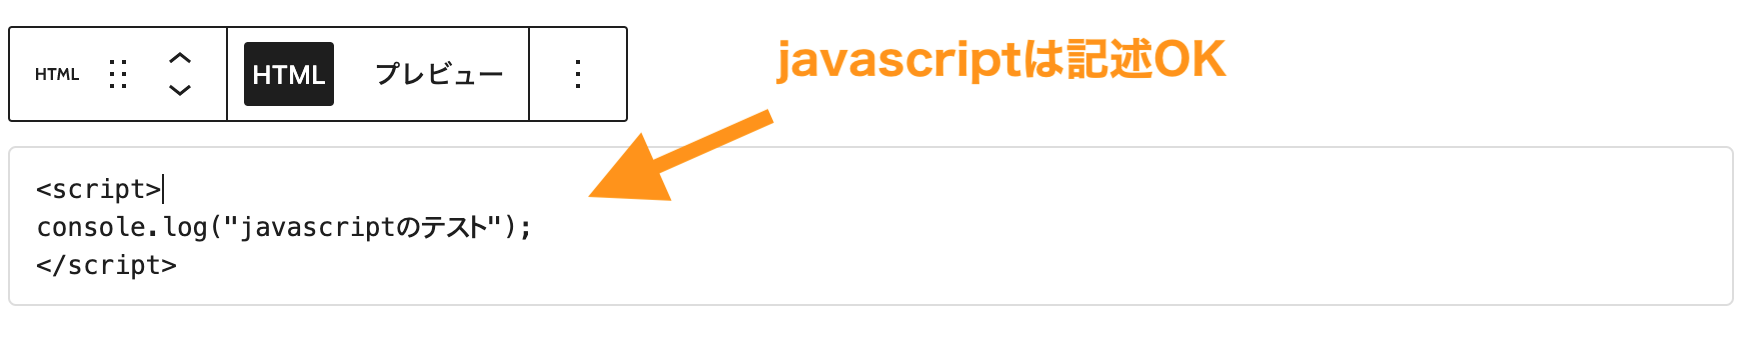 Javascriptは記述可能